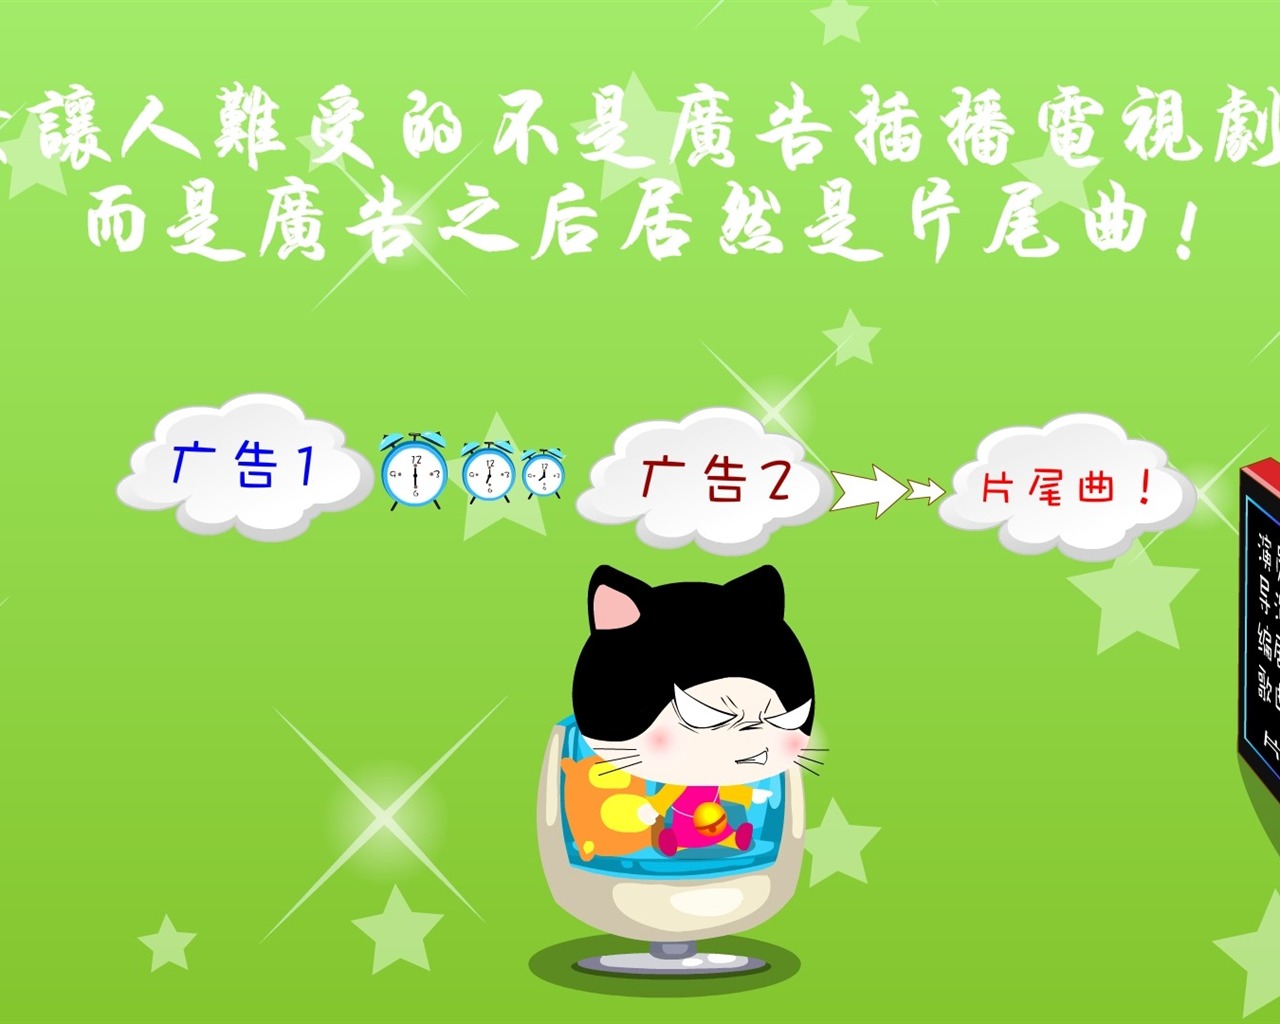 猫咪宝贝 卡通壁纸(三)3 - 1280x1024